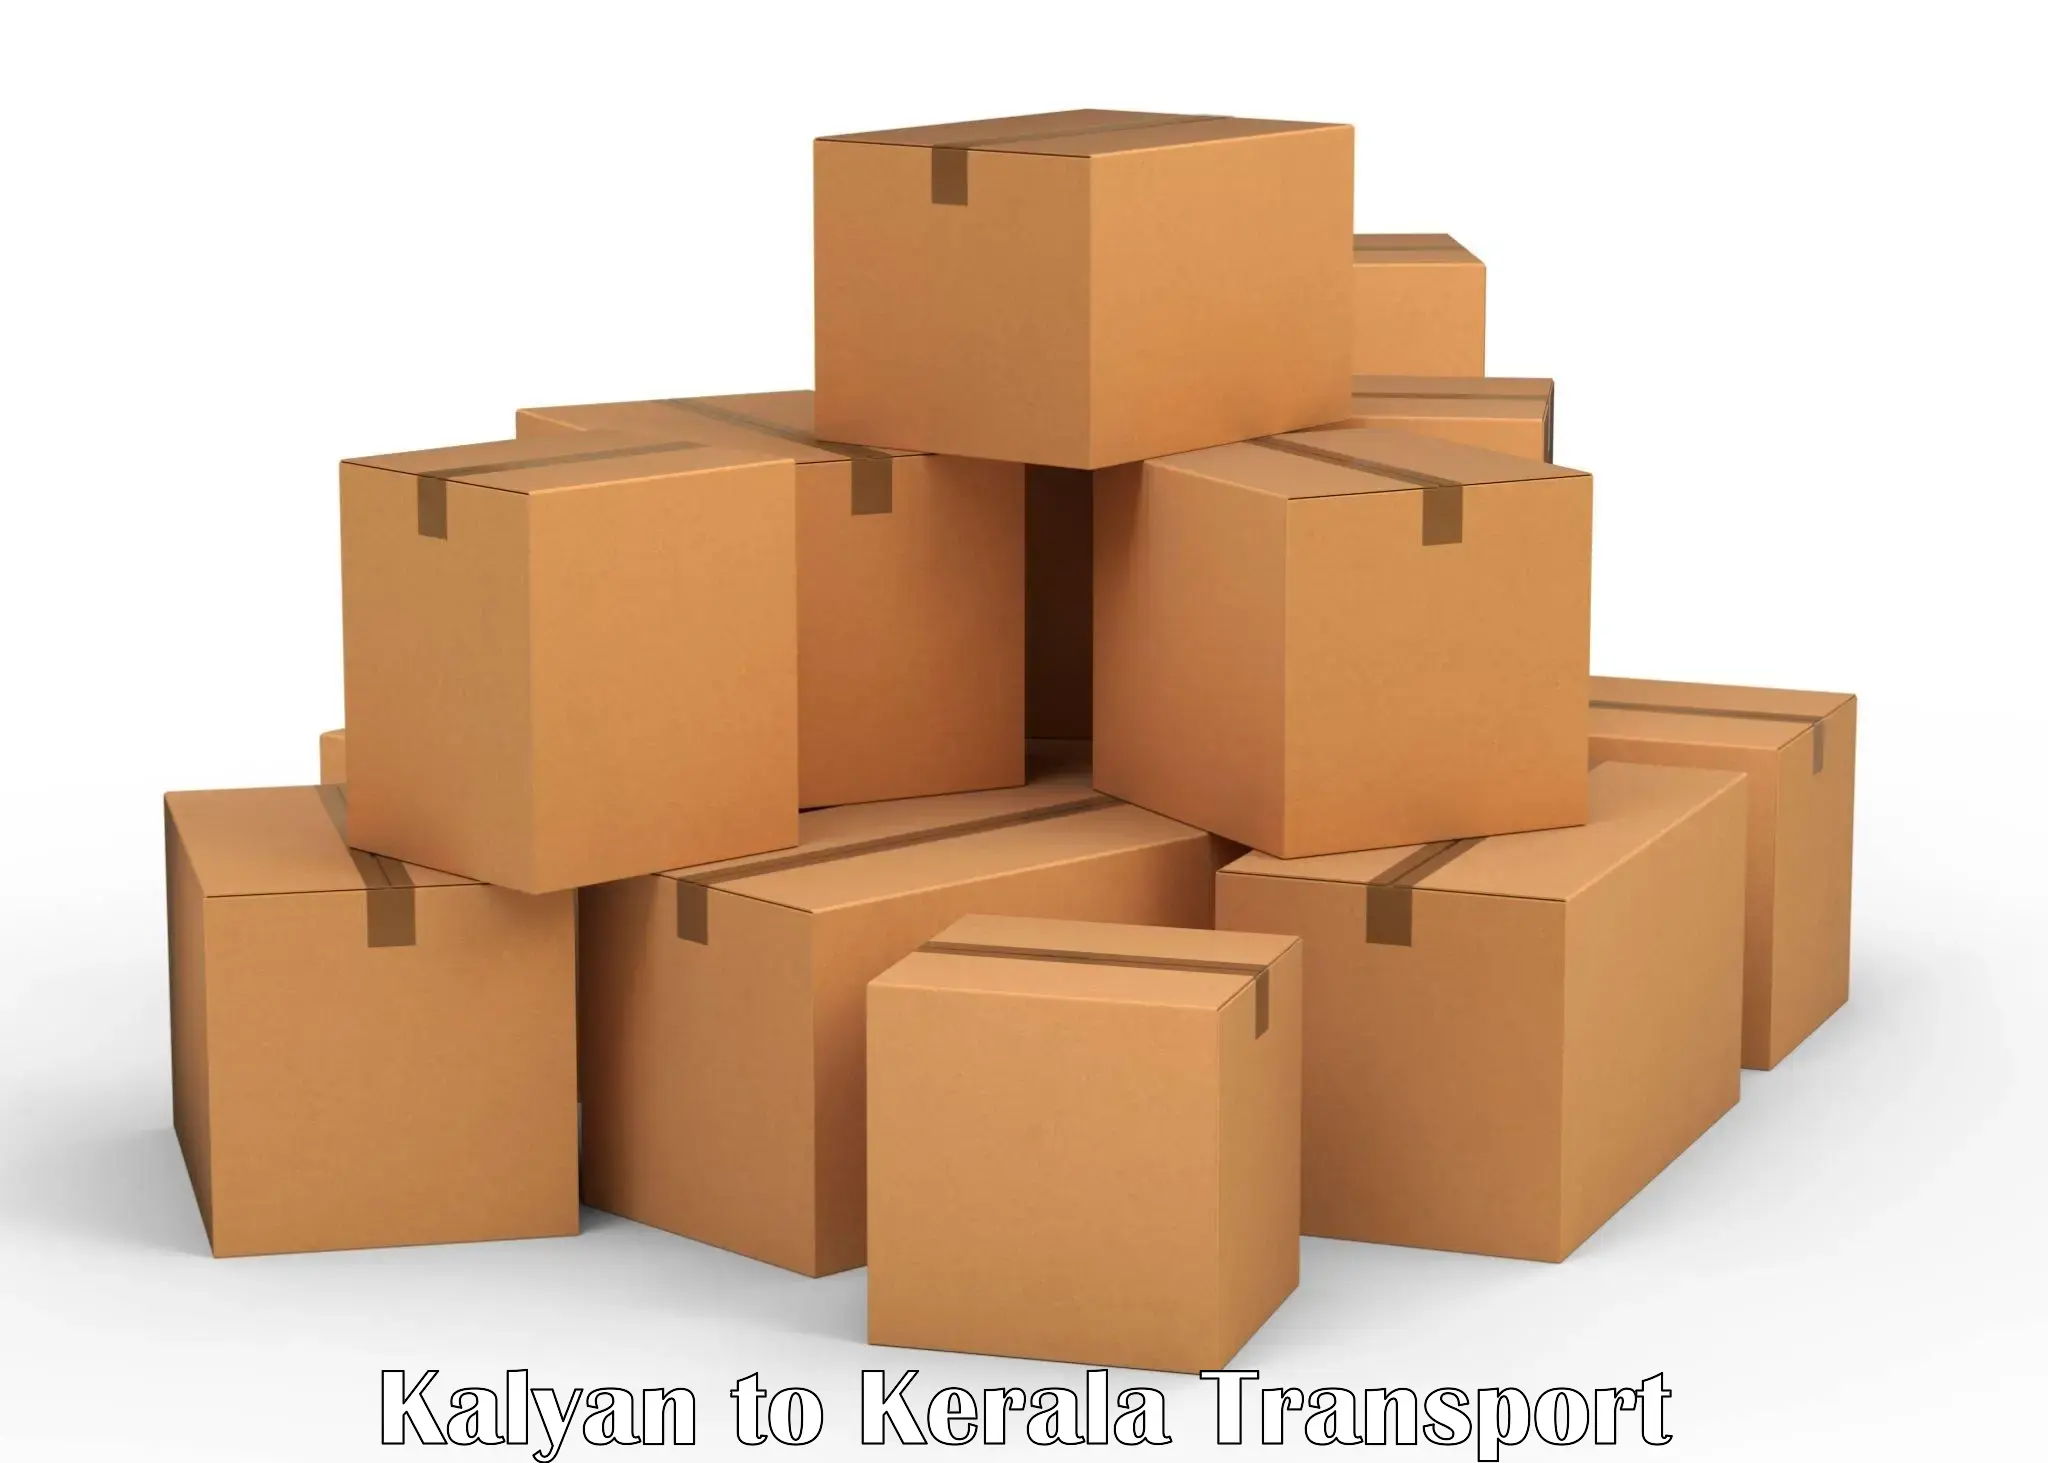 Daily transport service Kalyan to Payyanur